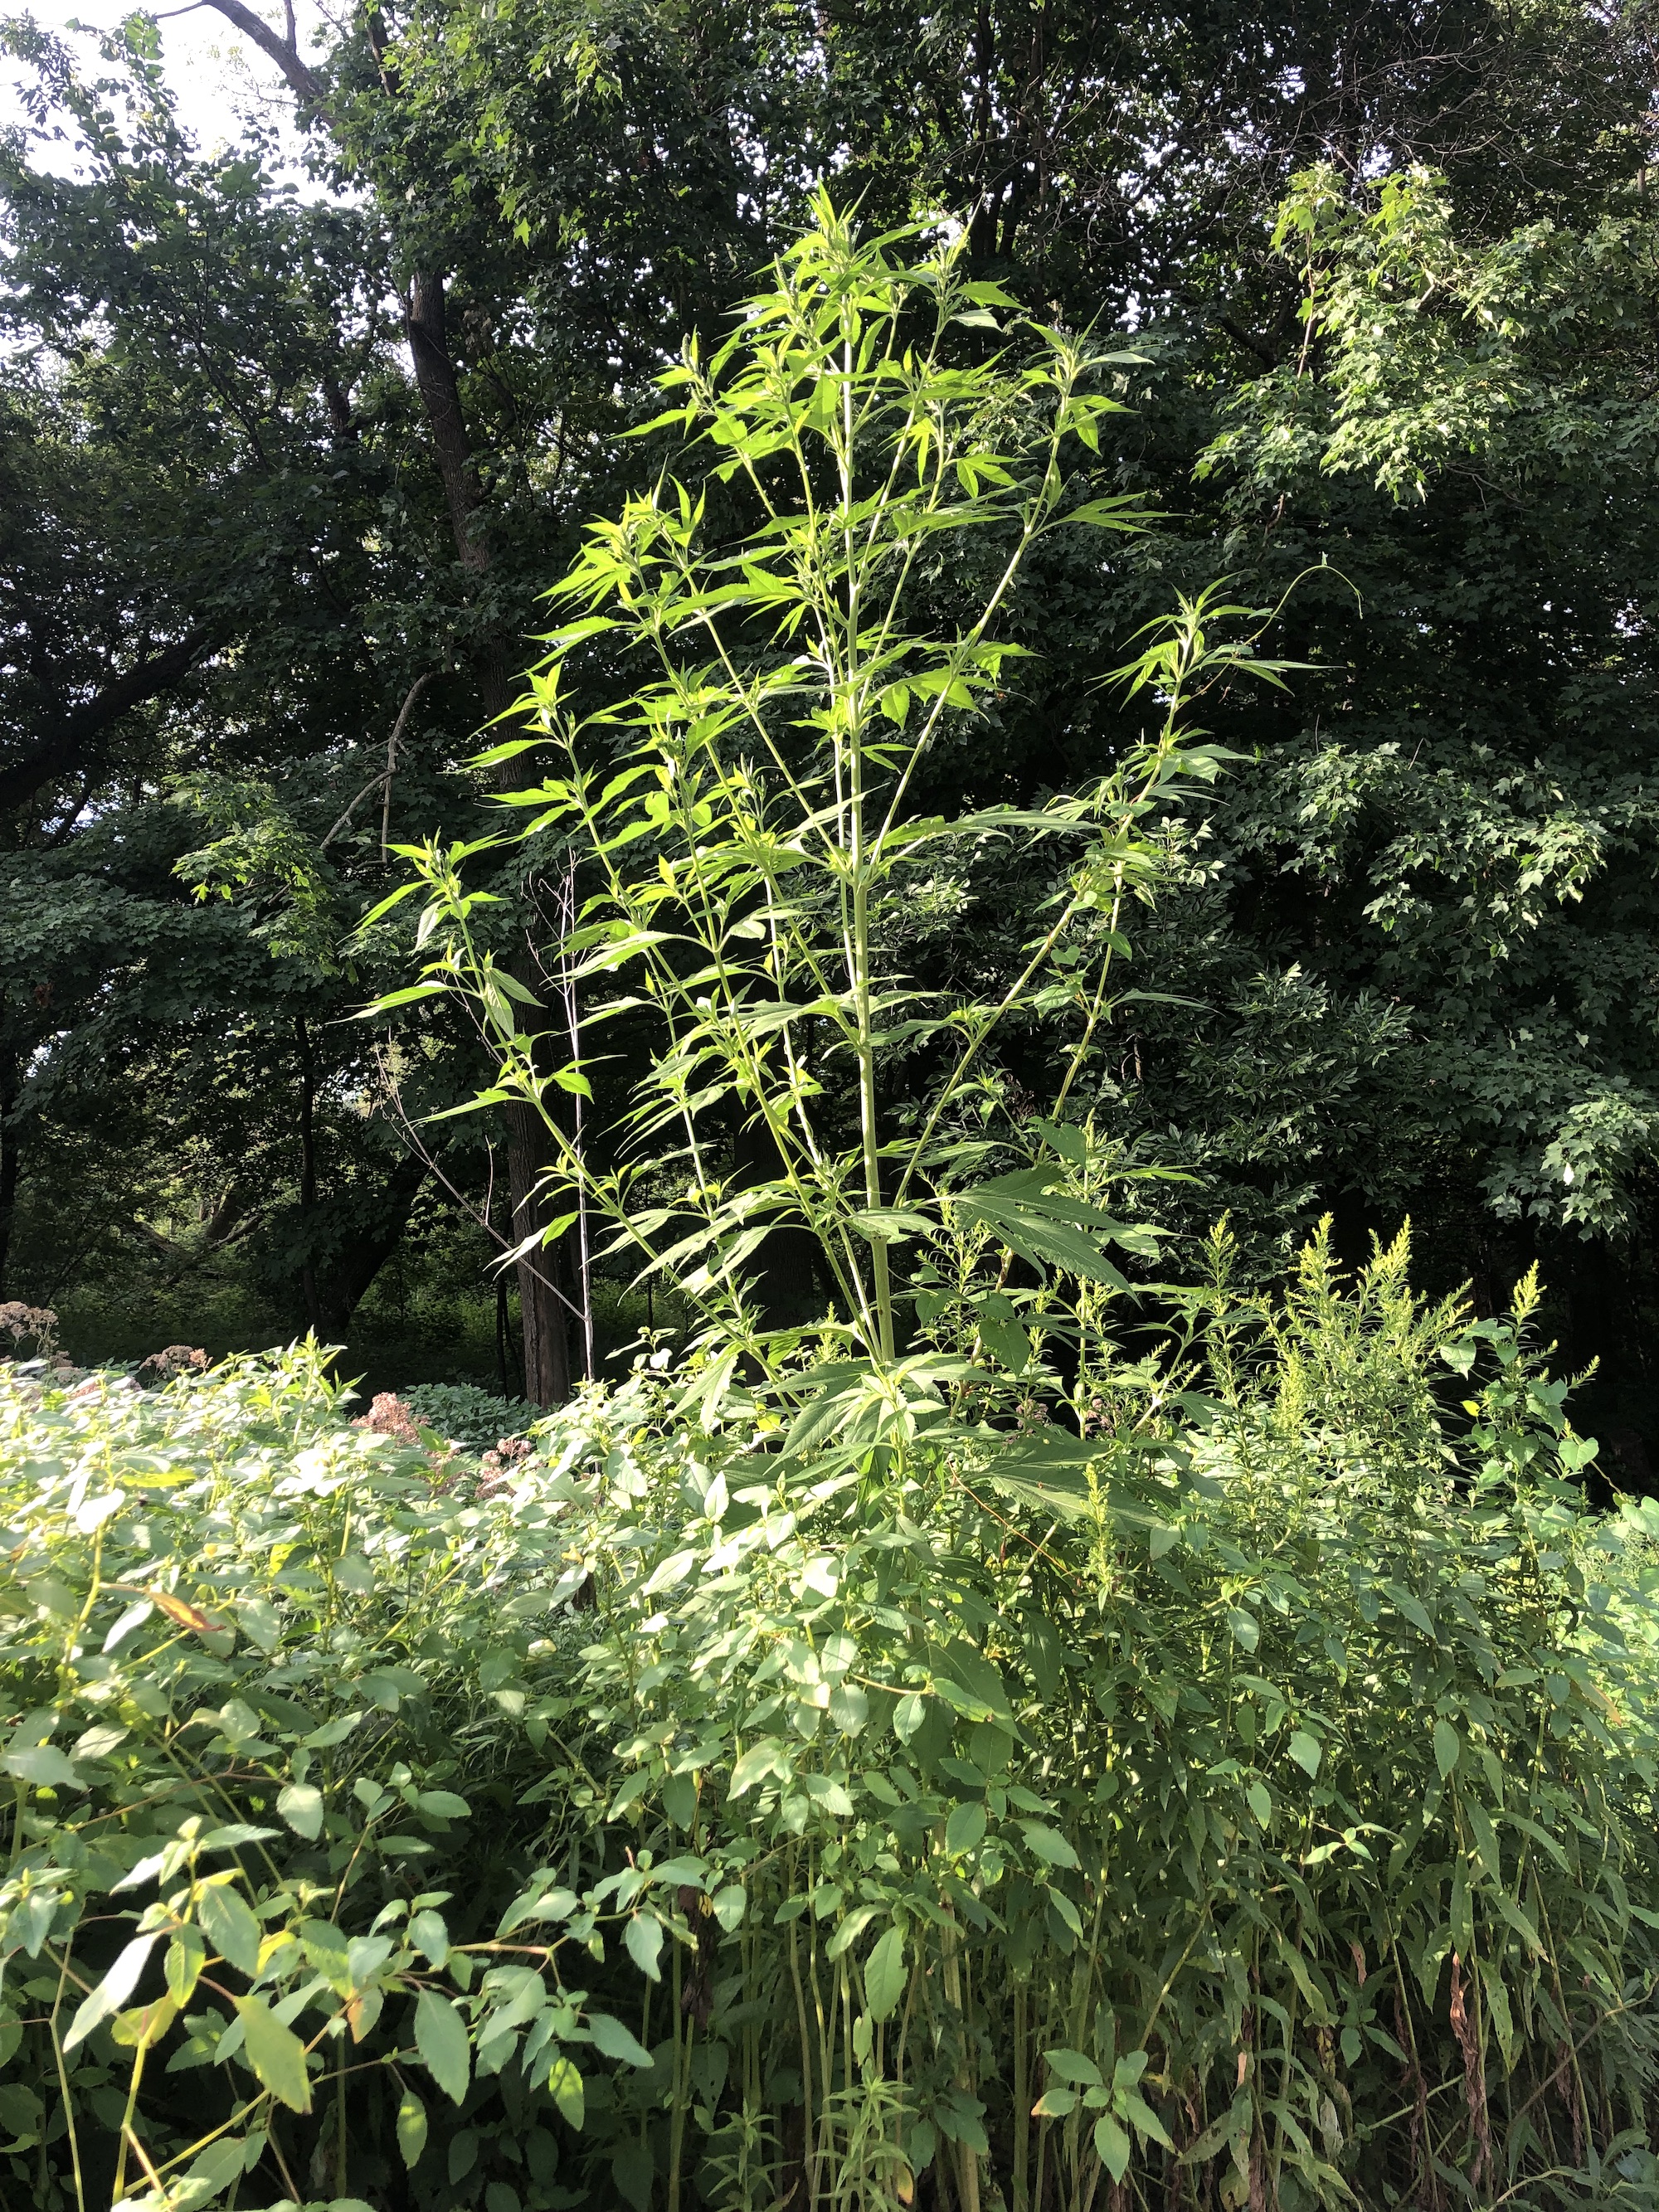 Giant Ragweed towering over Joe Pye Weed in Oak Savanna in Madison, Wisconsin on August 12, 2022.